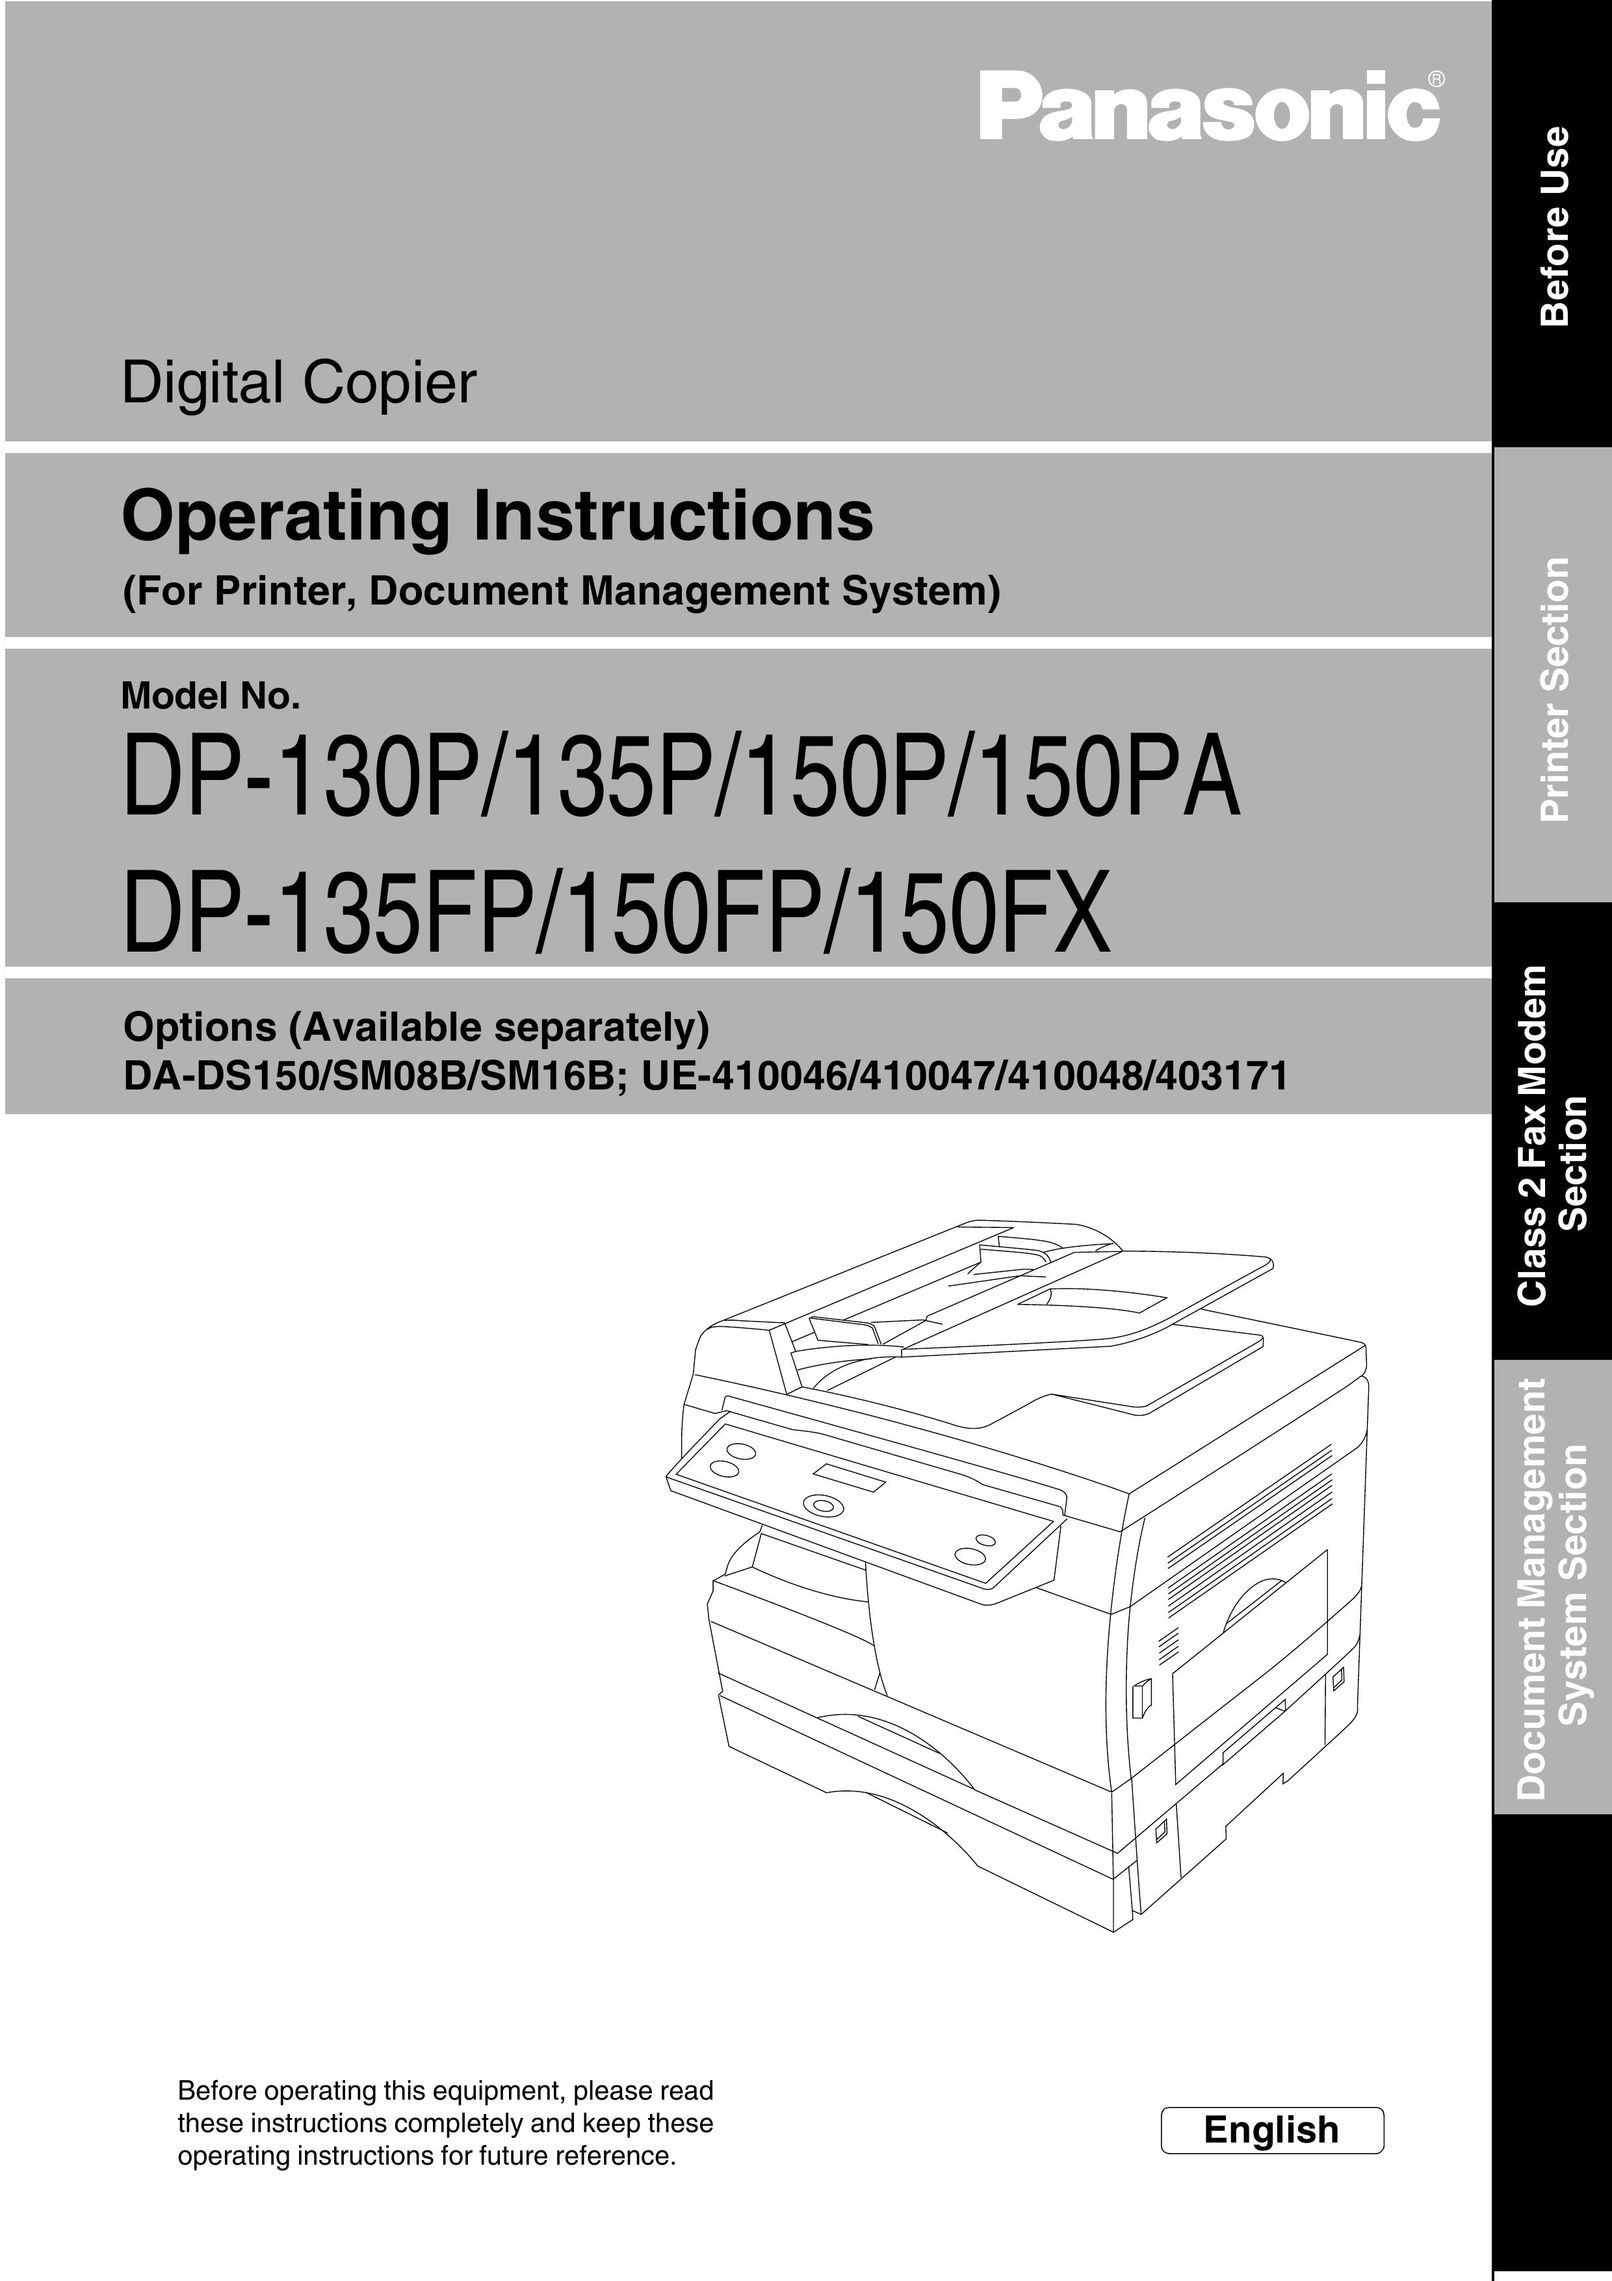 Panasonic 150FP All in One Printer User Manual